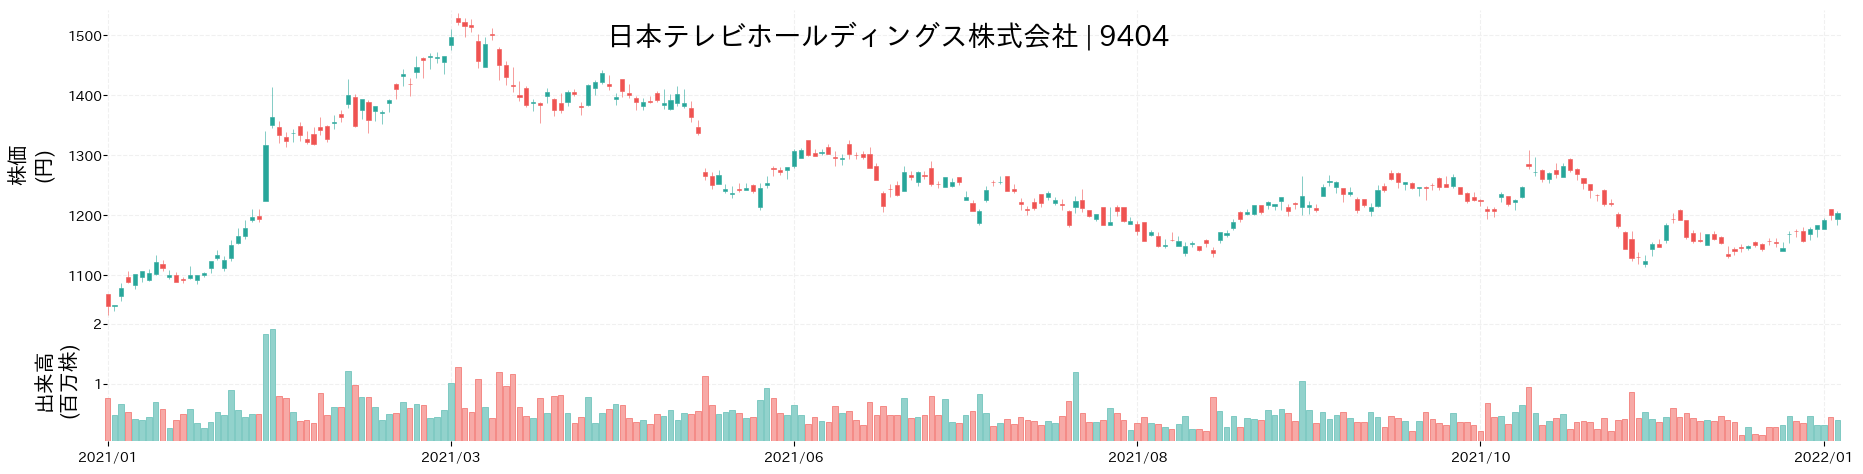 日本テレビホールディングスの株価推移(2021)